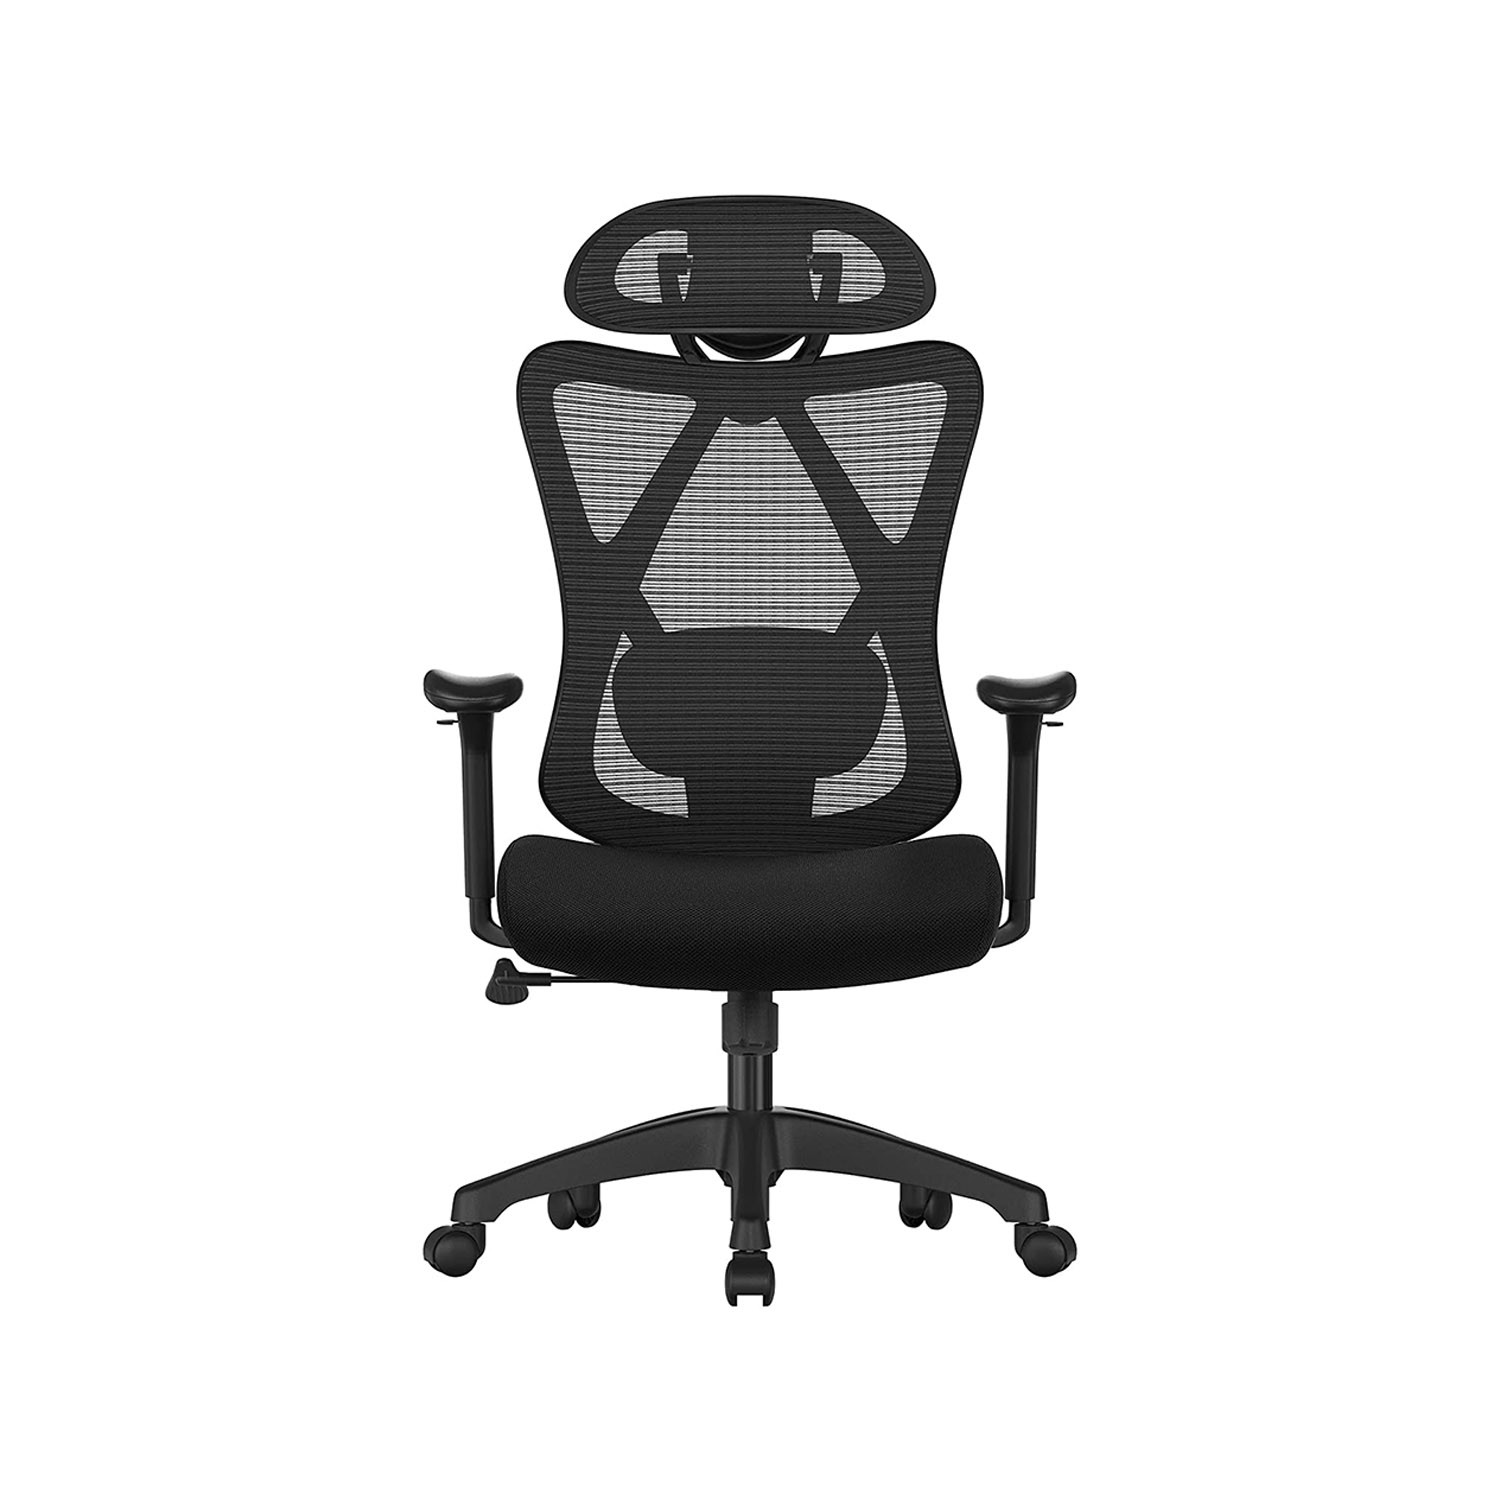 Kancelářská židle OBN063B01